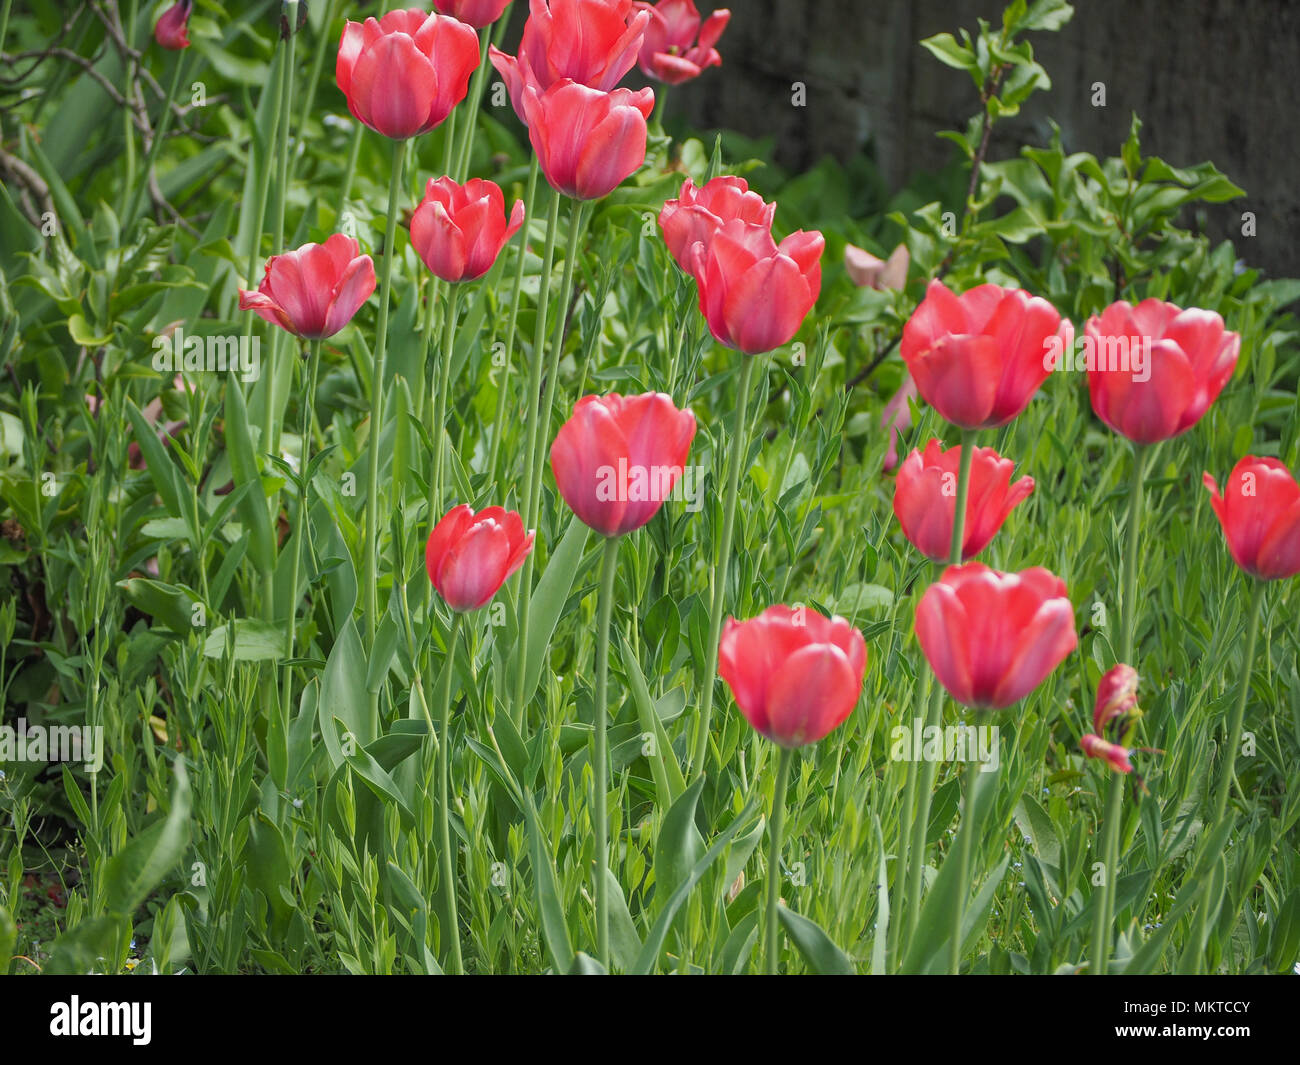 Gesneriana tulipa Tulipa gesneriana